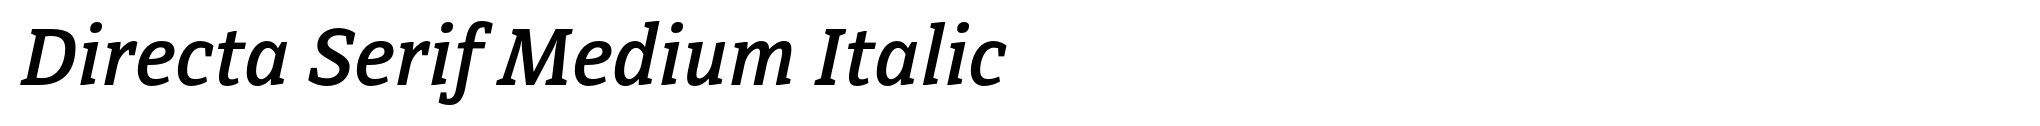 Directa Serif Medium Italic image